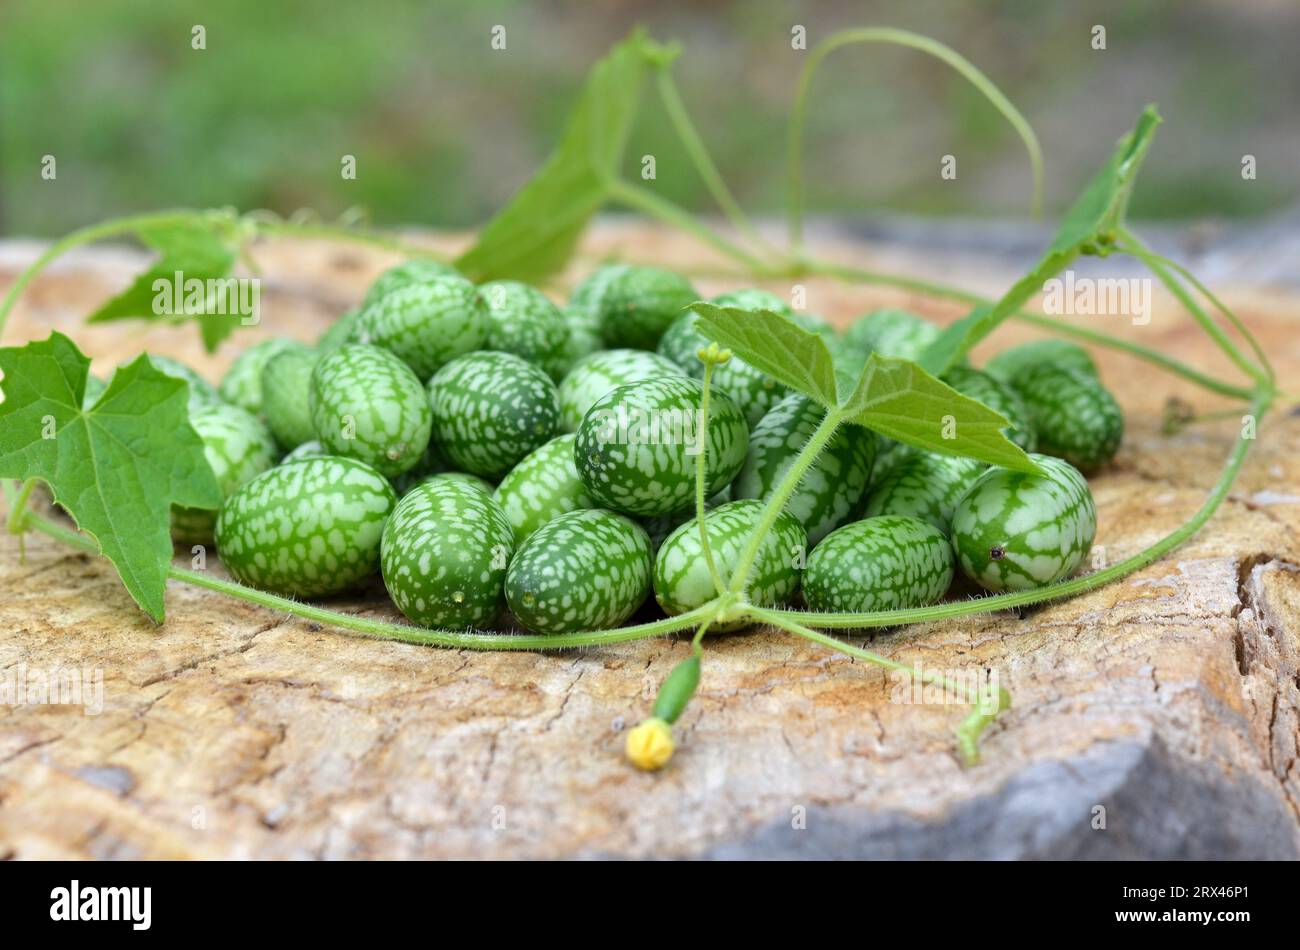 Nahaufnahme von kleinen grünen Melotria-Scabra-Früchten mit dünnen Reben und grünen Blättern. Ökologische Erzeugnisse. Stockfoto